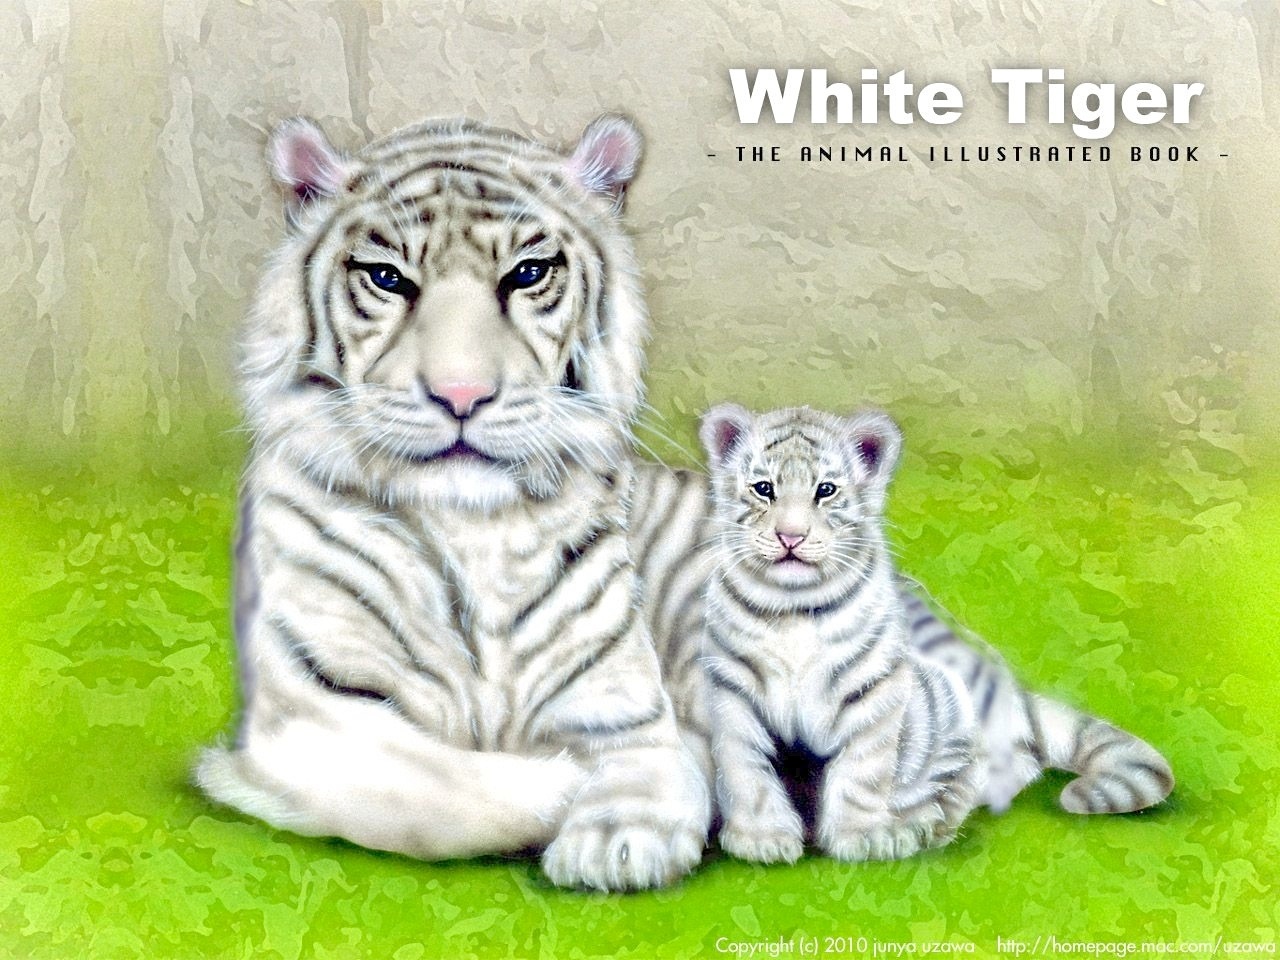 リアリズム絵画 動物の絵 動物イラスト ホワイトタイガー ホワイトタイガー親子